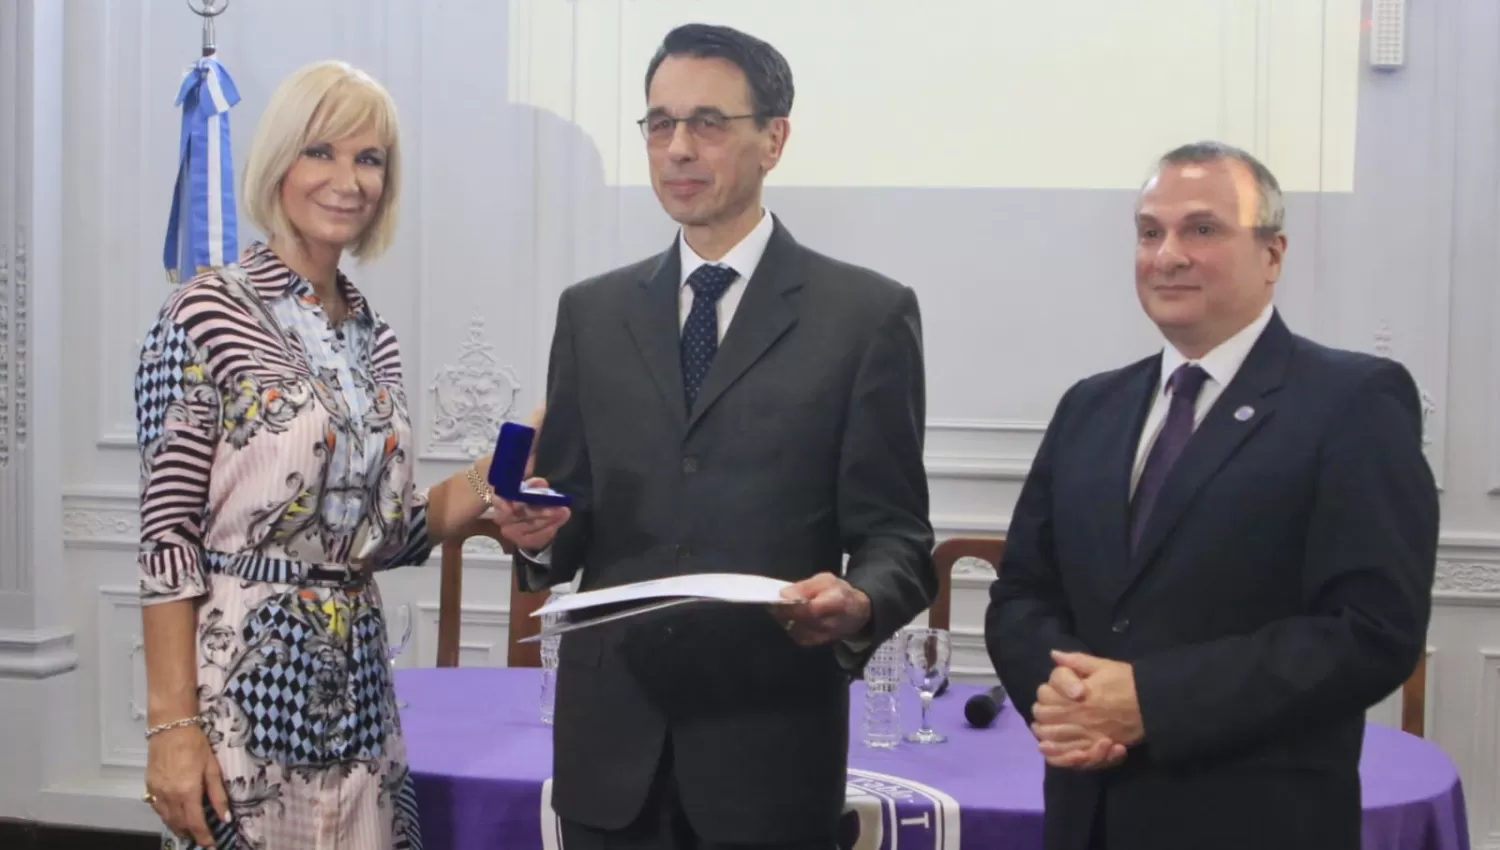 DISTINCIÓN. La Universidad de San Pablo-T honró con el título honoris causa a un destacado jurista alemán.